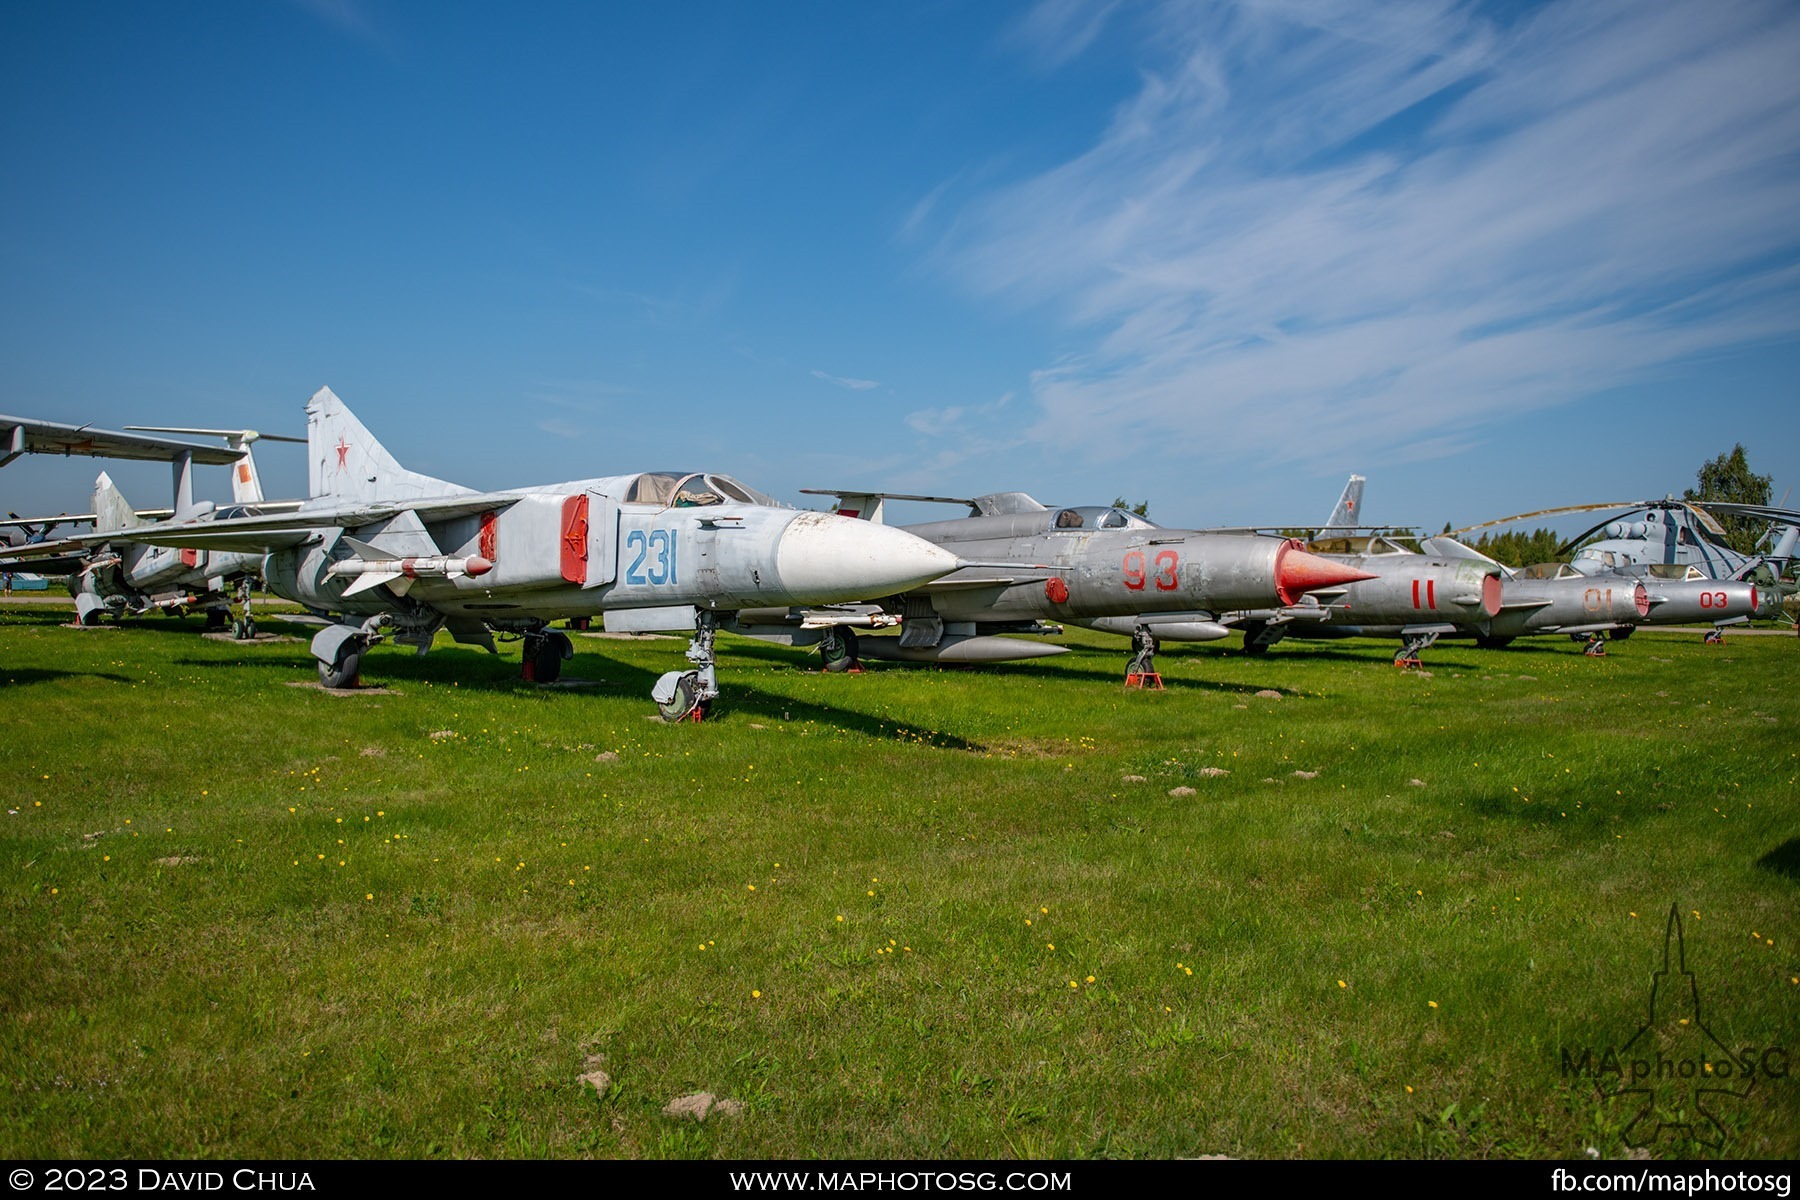 Family of Mikoyan MiGs. MiG-23, MiG-21, MiG-19, MiG-15, MiG-15UTI